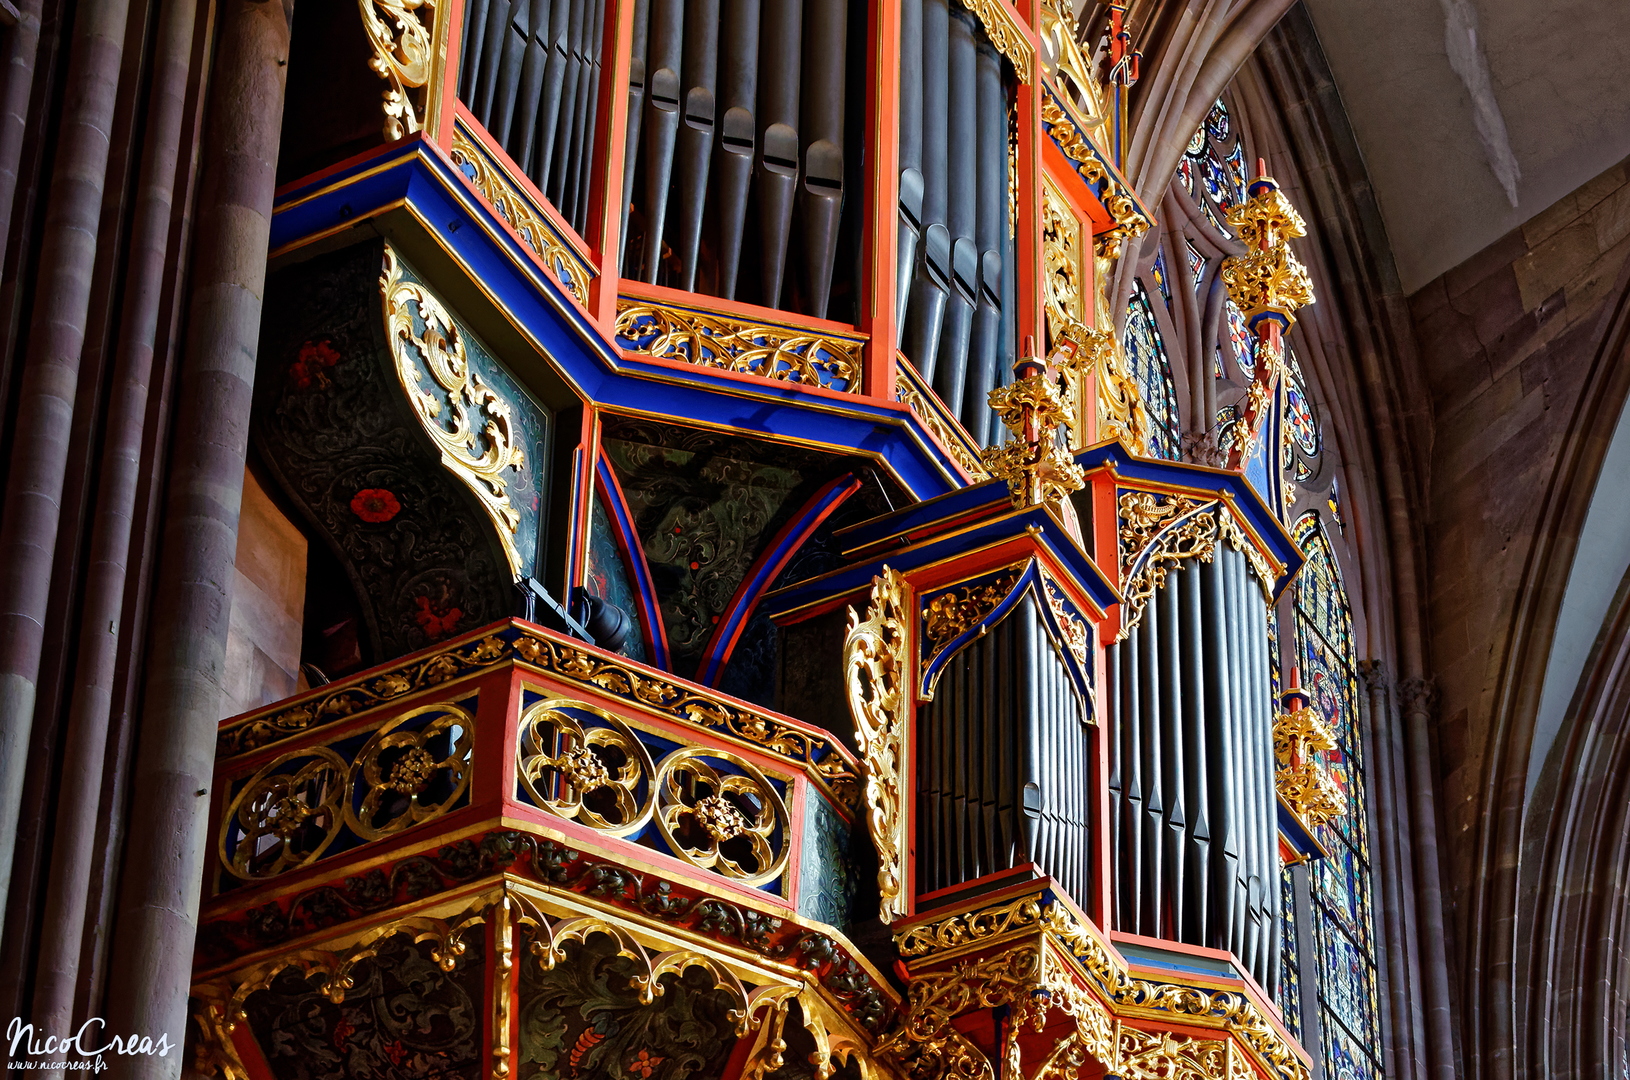 Grand orgue en nid d'hirondelle - DSC_1294_DxO copie.jpg